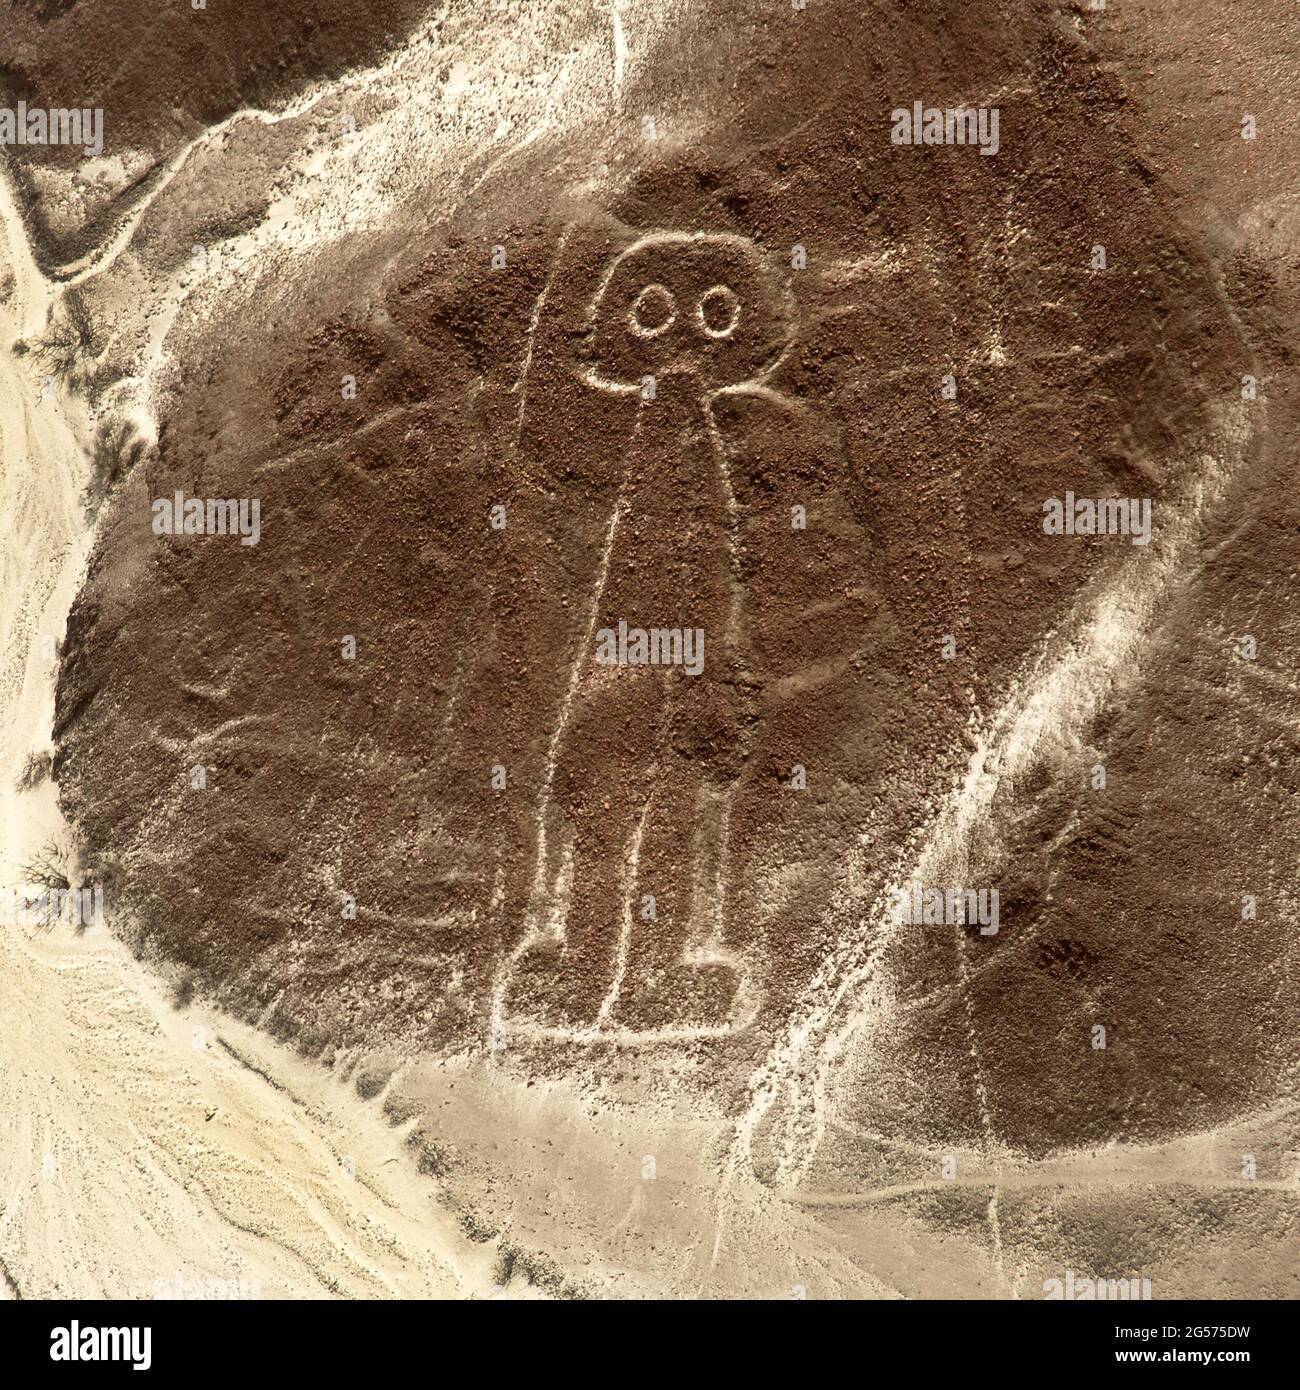 Der Raumfahrer oder Raumfahrer, Nazca oder Nasca geheimnisvolle Linien und Geoglyphen Luftbild, Wahrzeichen in Peru Stockfoto